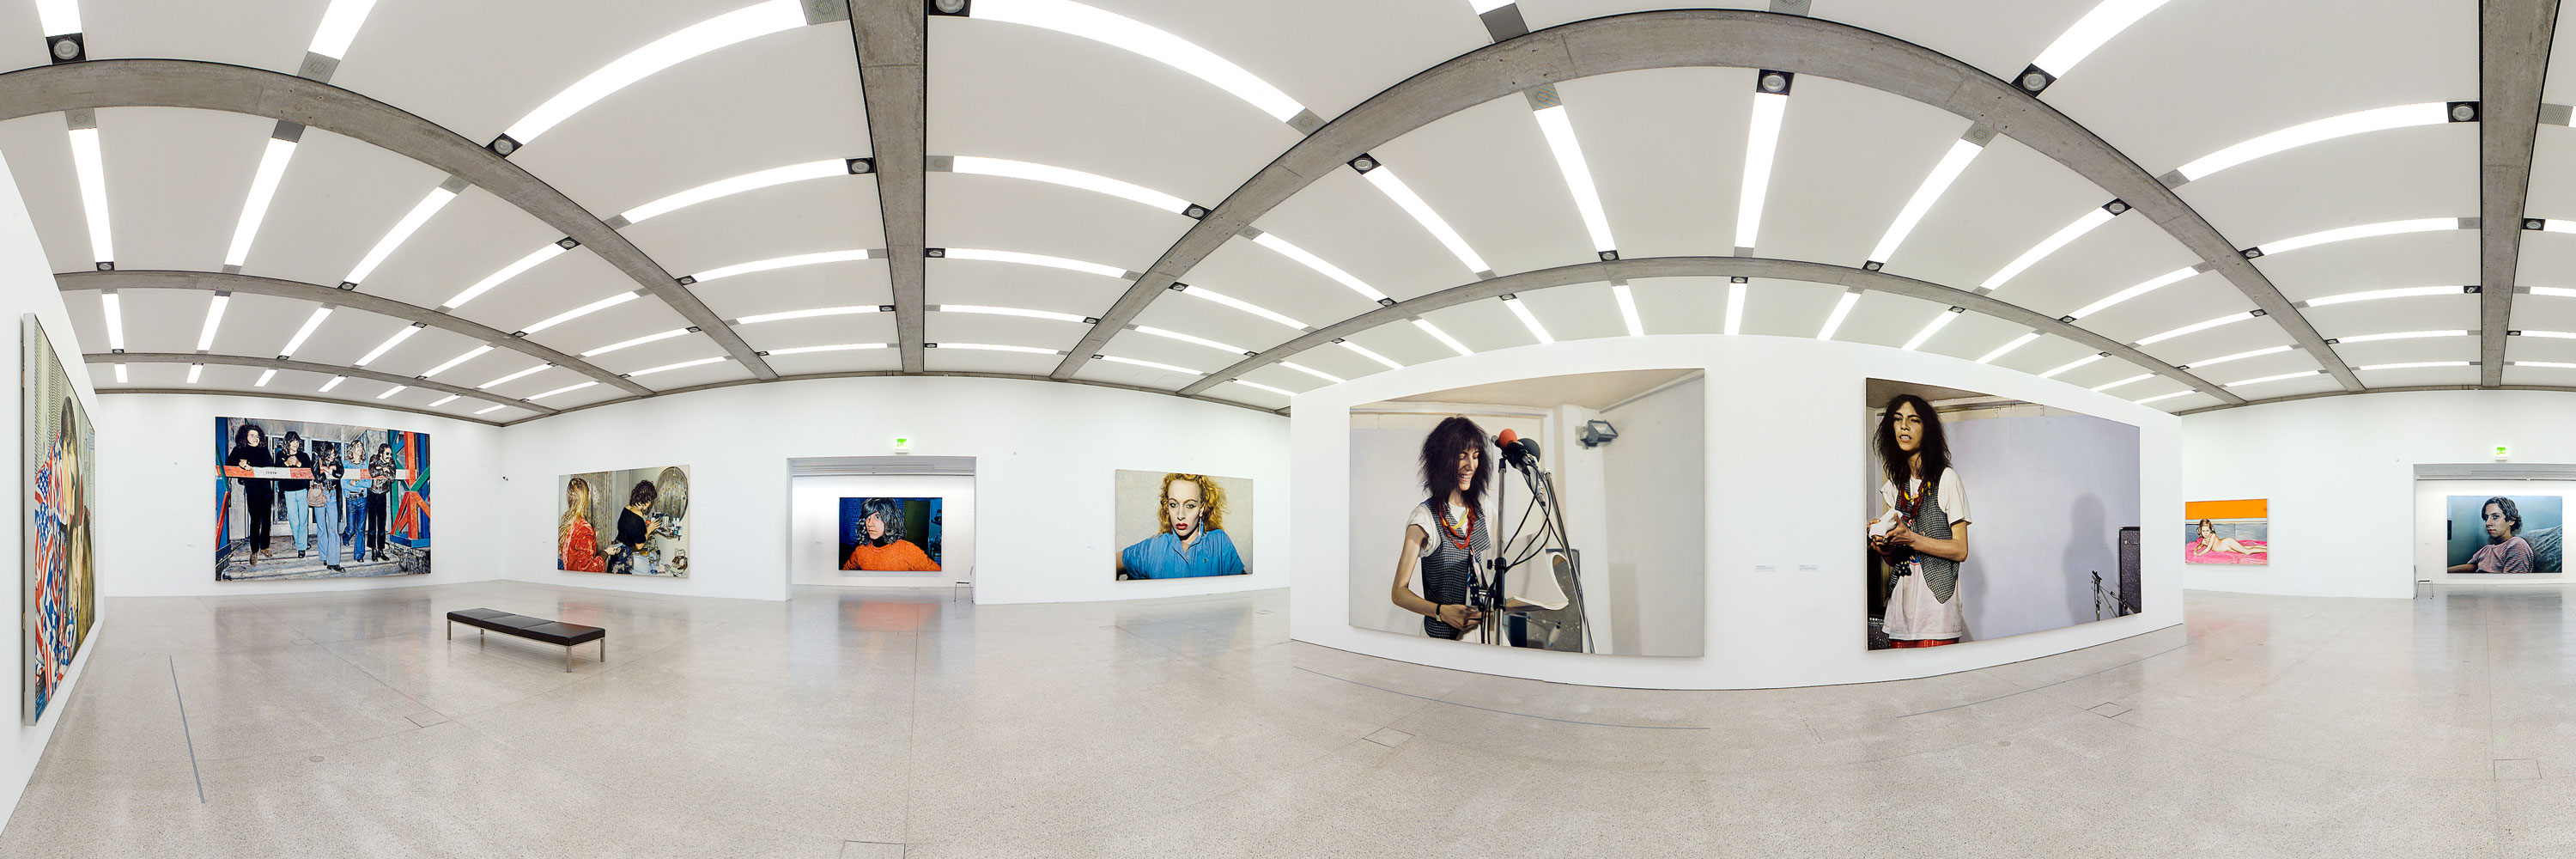 virtuelle 360° Panorama-Rundgänge in Ausstellungen